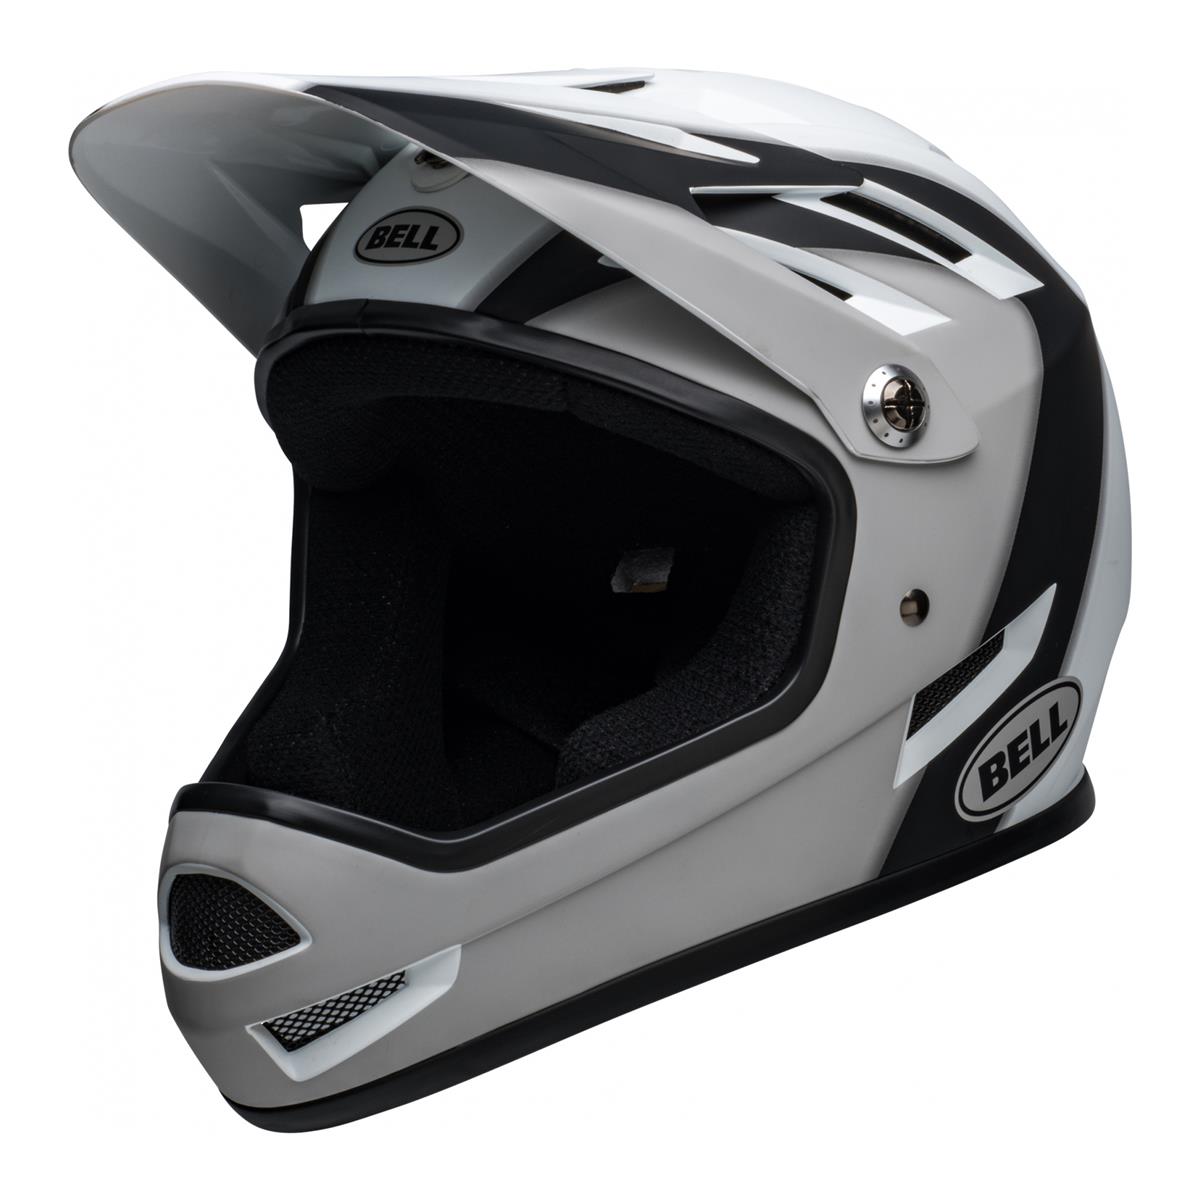 Sanction Full Face Helmet Black/White Size S (52-54cm)